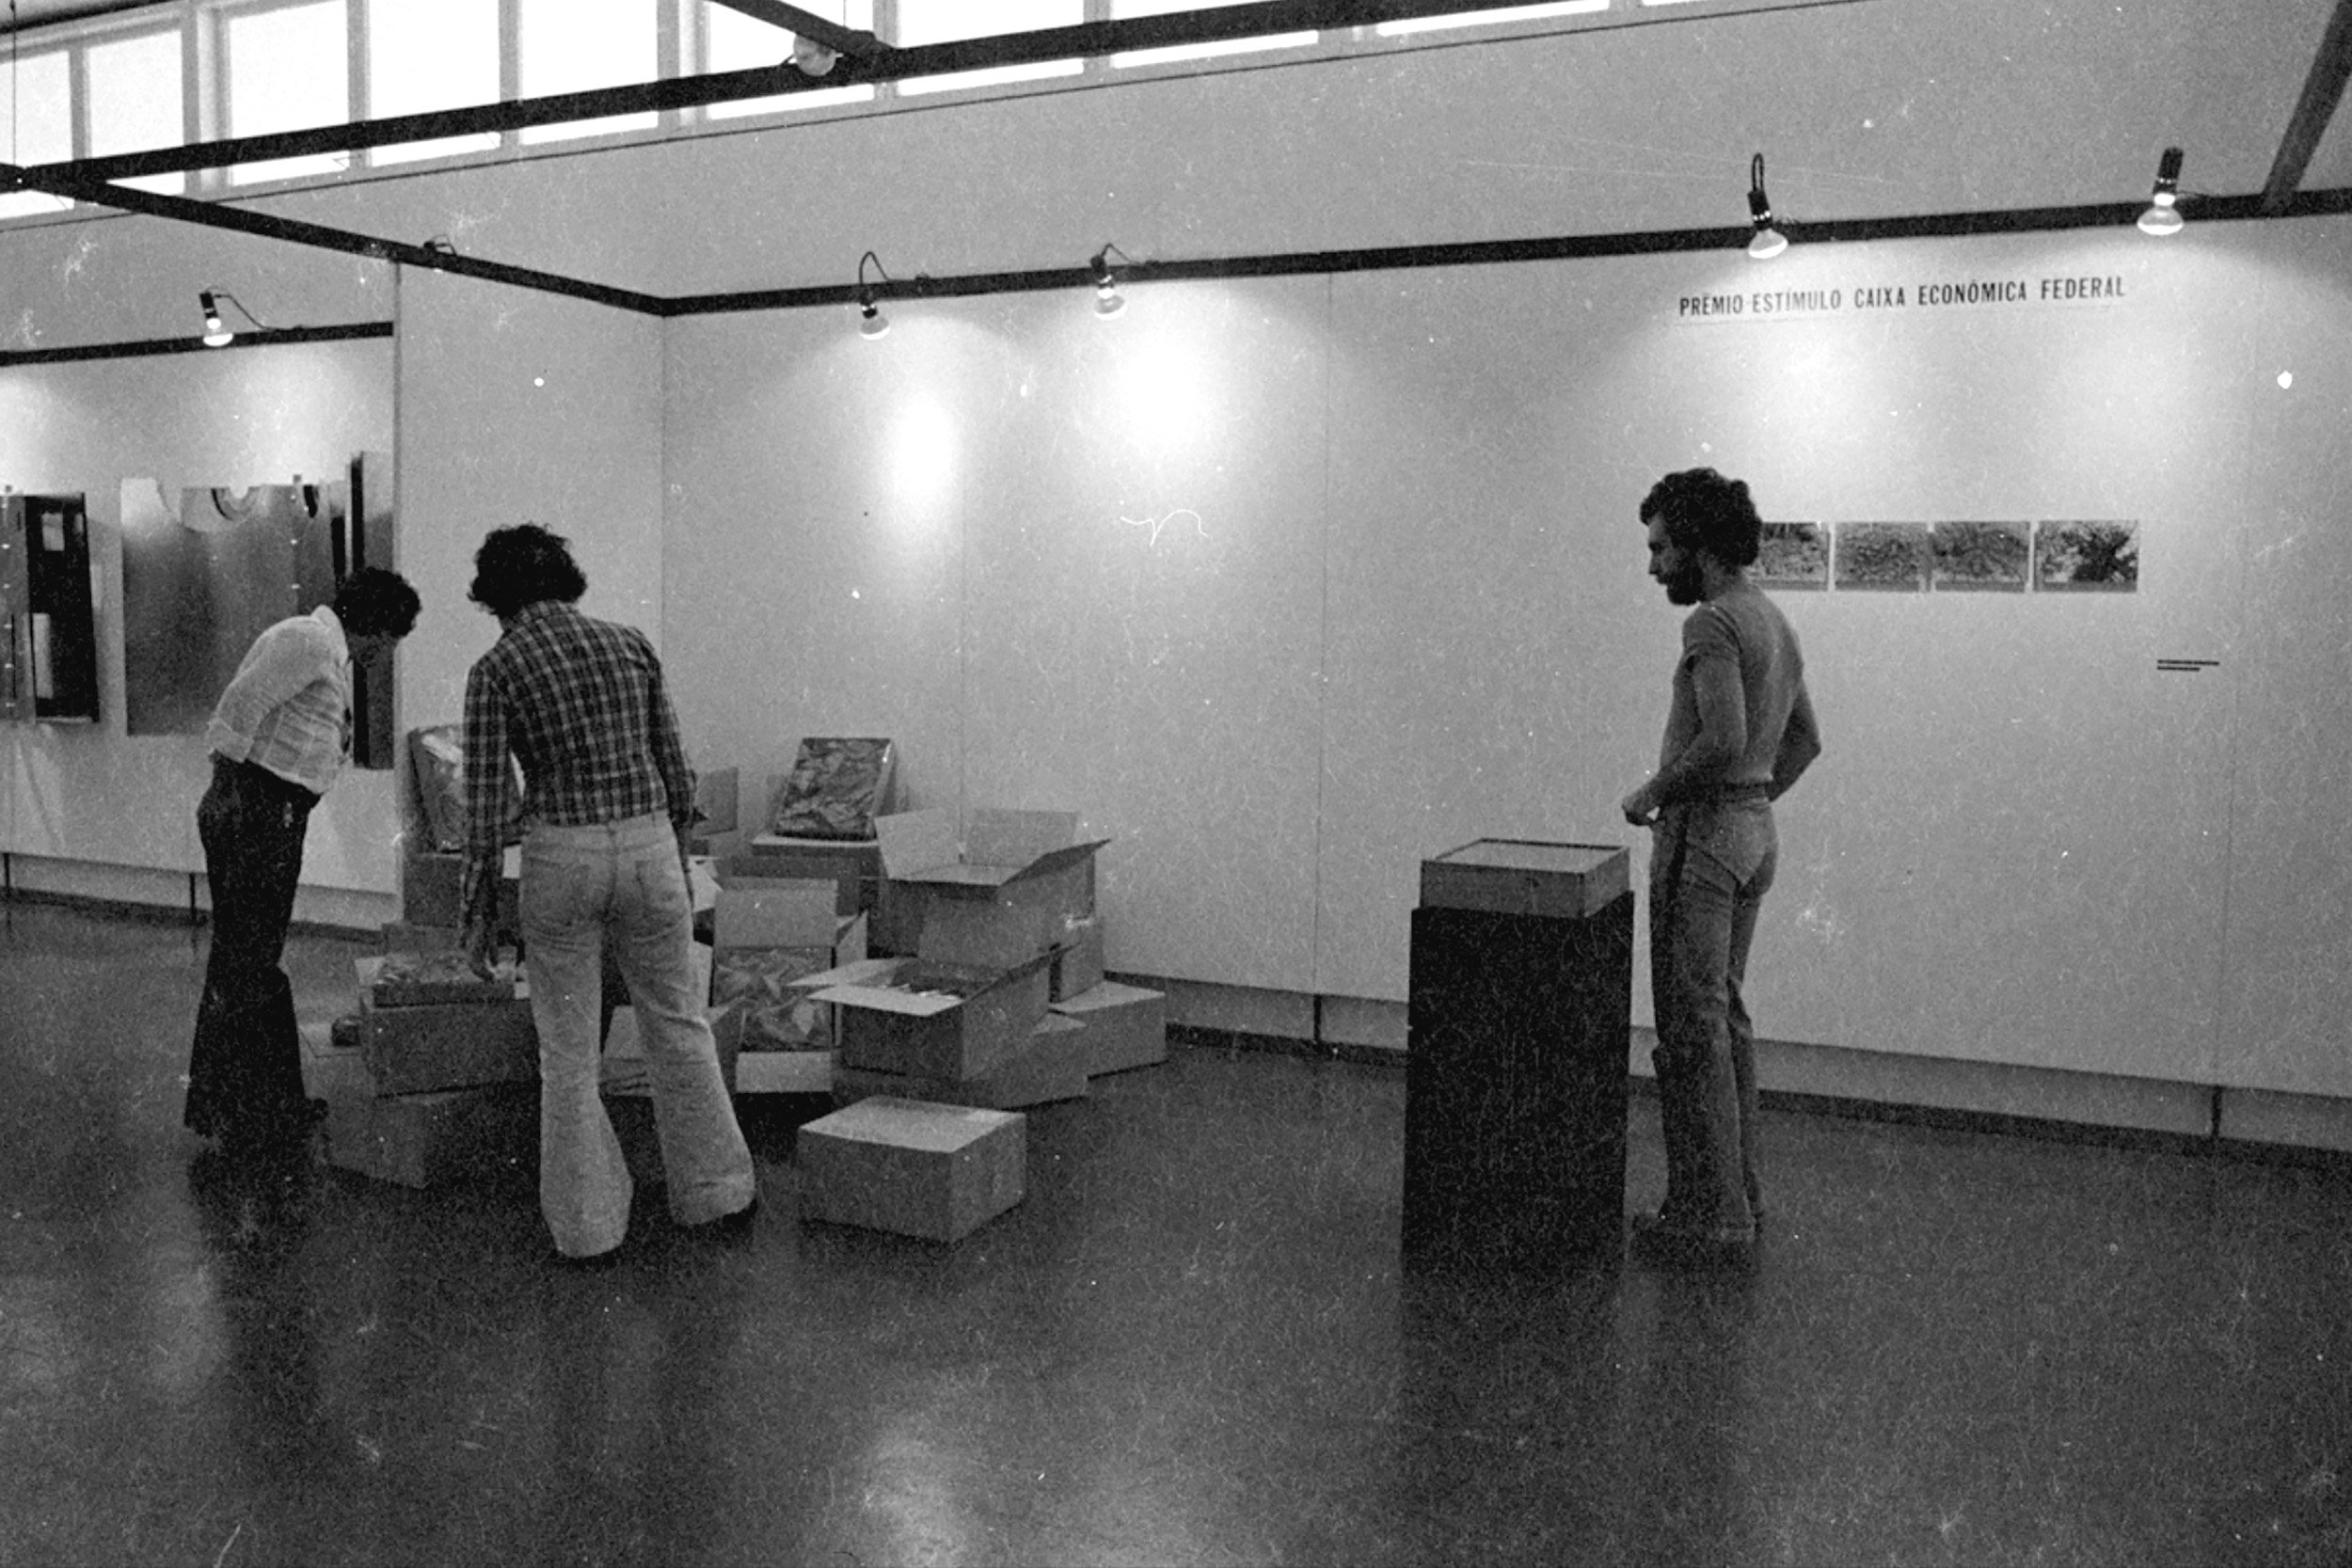  7º panorama da arte atual brasileira / mam-sp, são paulo, 1975 